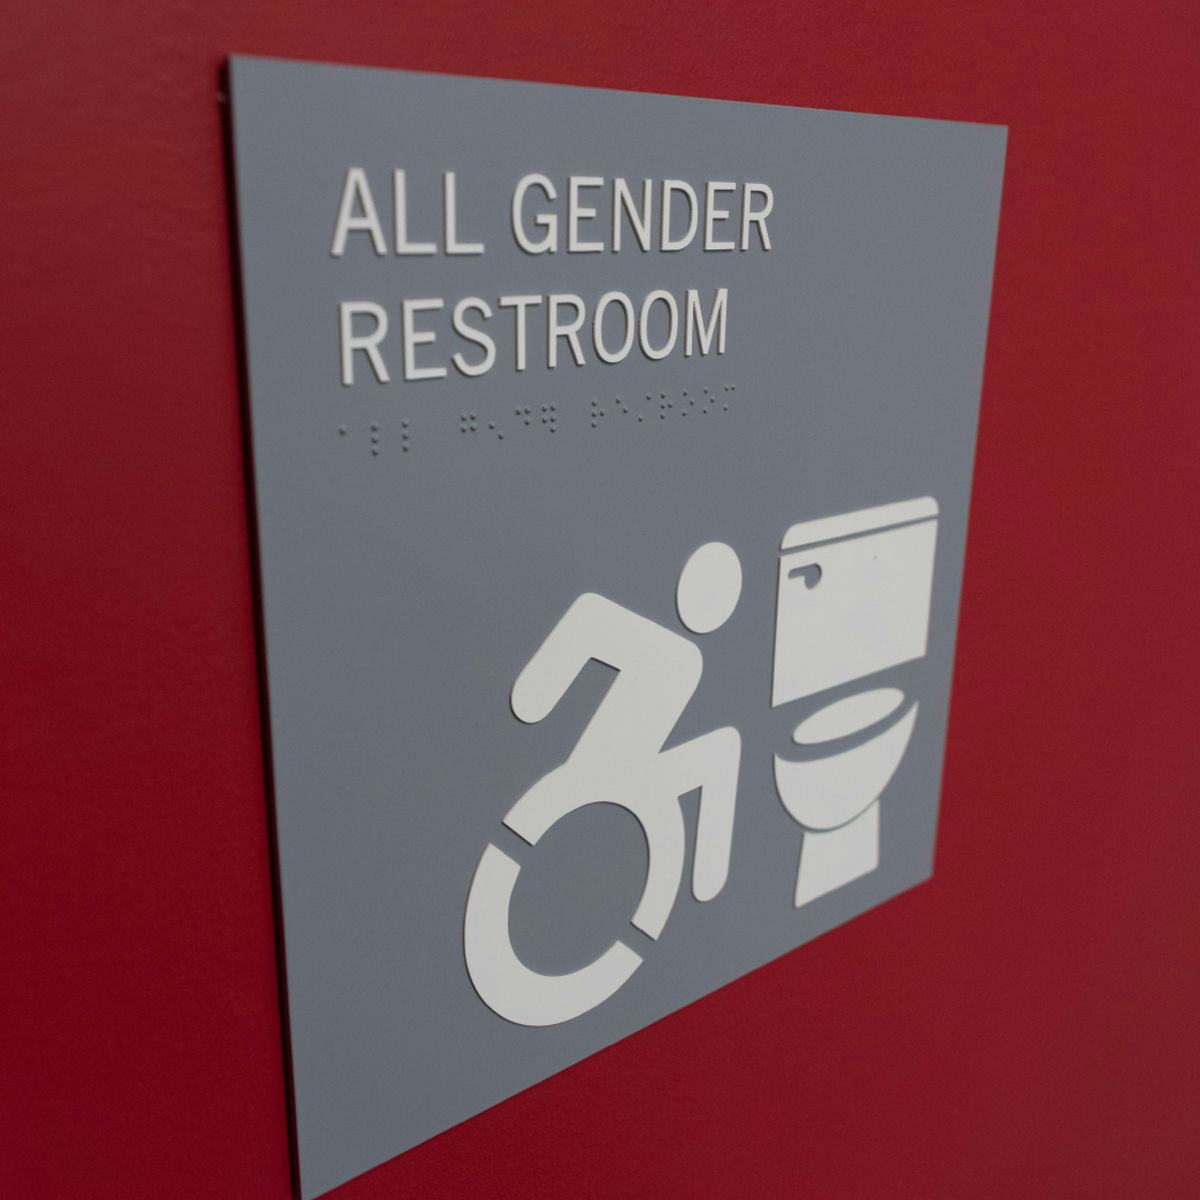 All Gender Restroom sign.